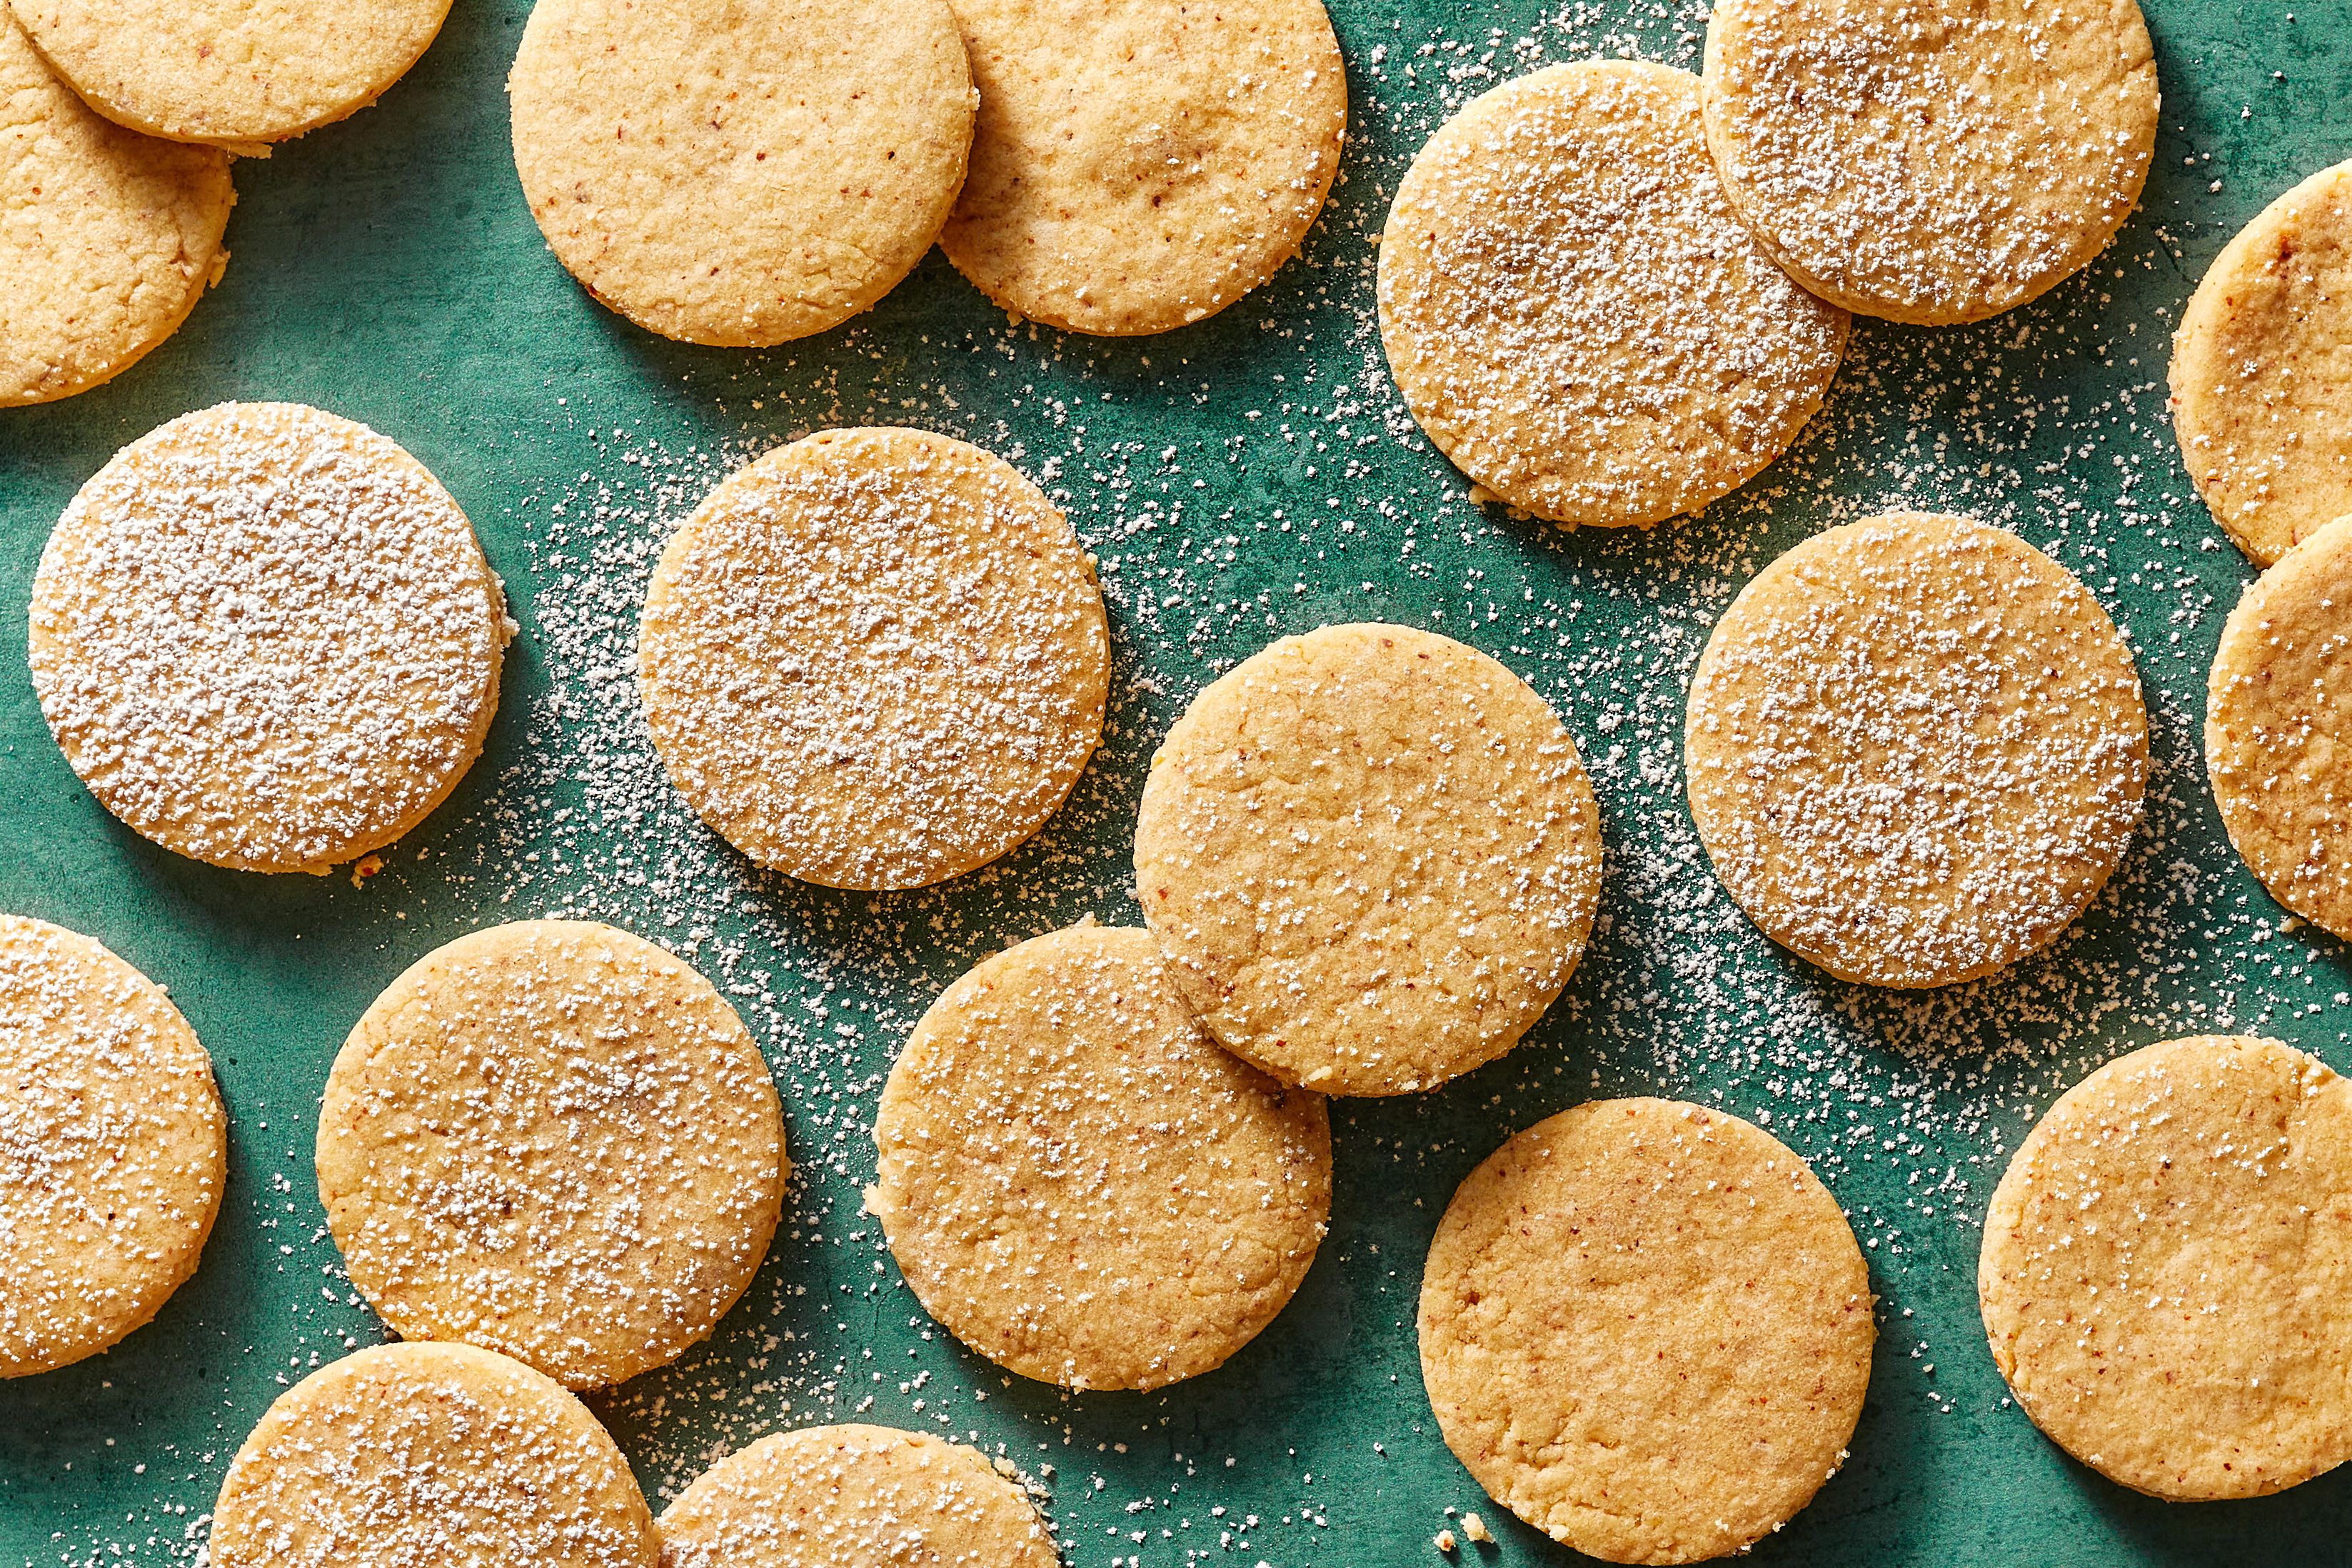 Polvorones: Spanish Almond Cookies